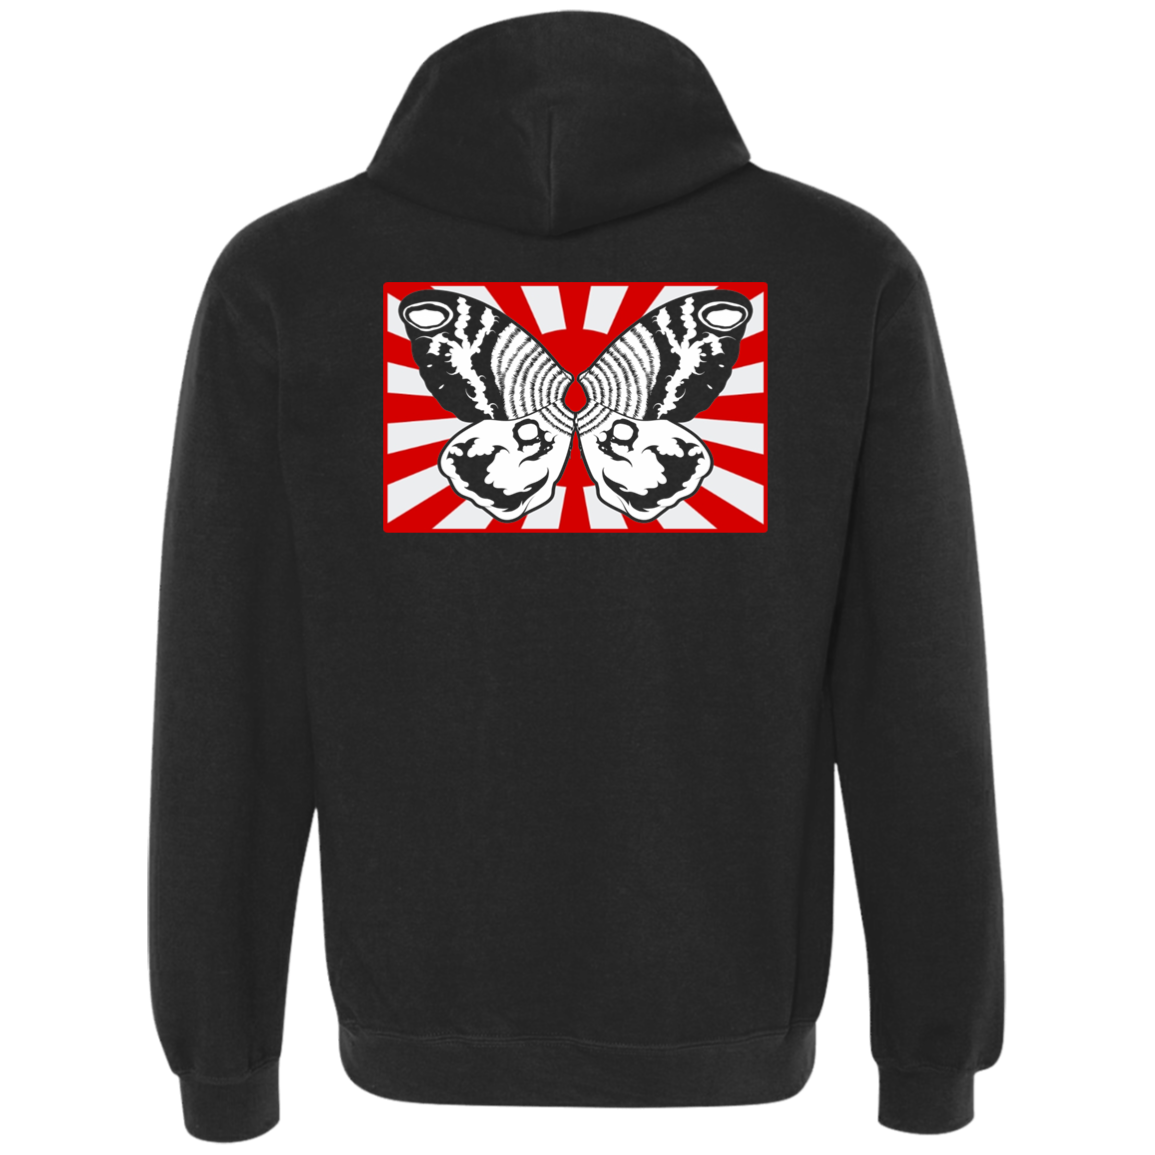 ArtichokeUSA Character and Font design #30. Mothra Fan Art. Gildan Heavyweight Pullover Fleece Sweatshirt